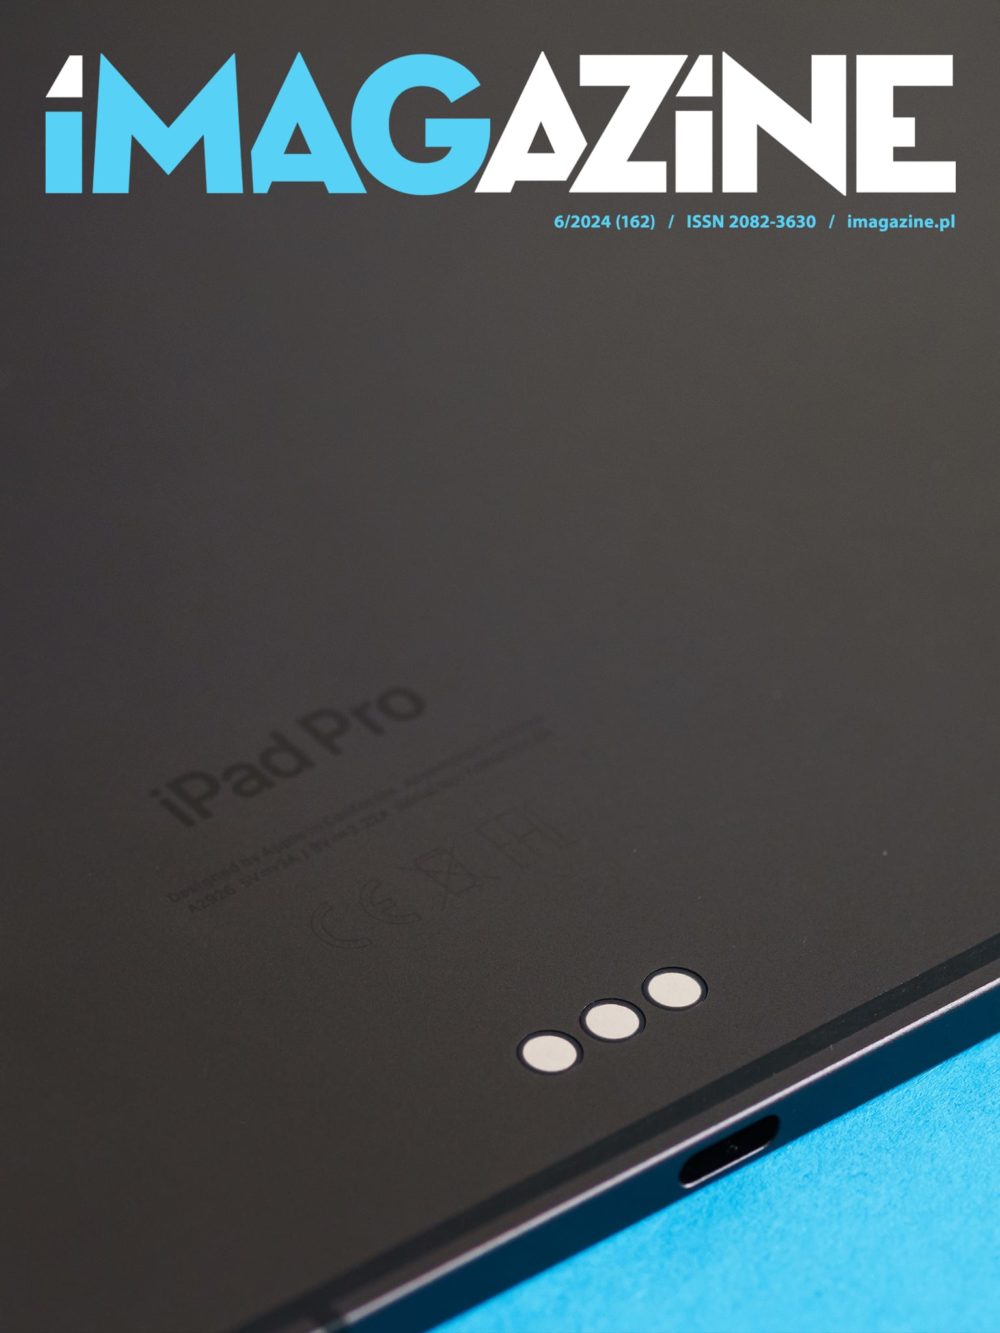 Zdjęcie okładkowe do wpis iMagazine 6/2024 – Nowe iPady – jest płasko